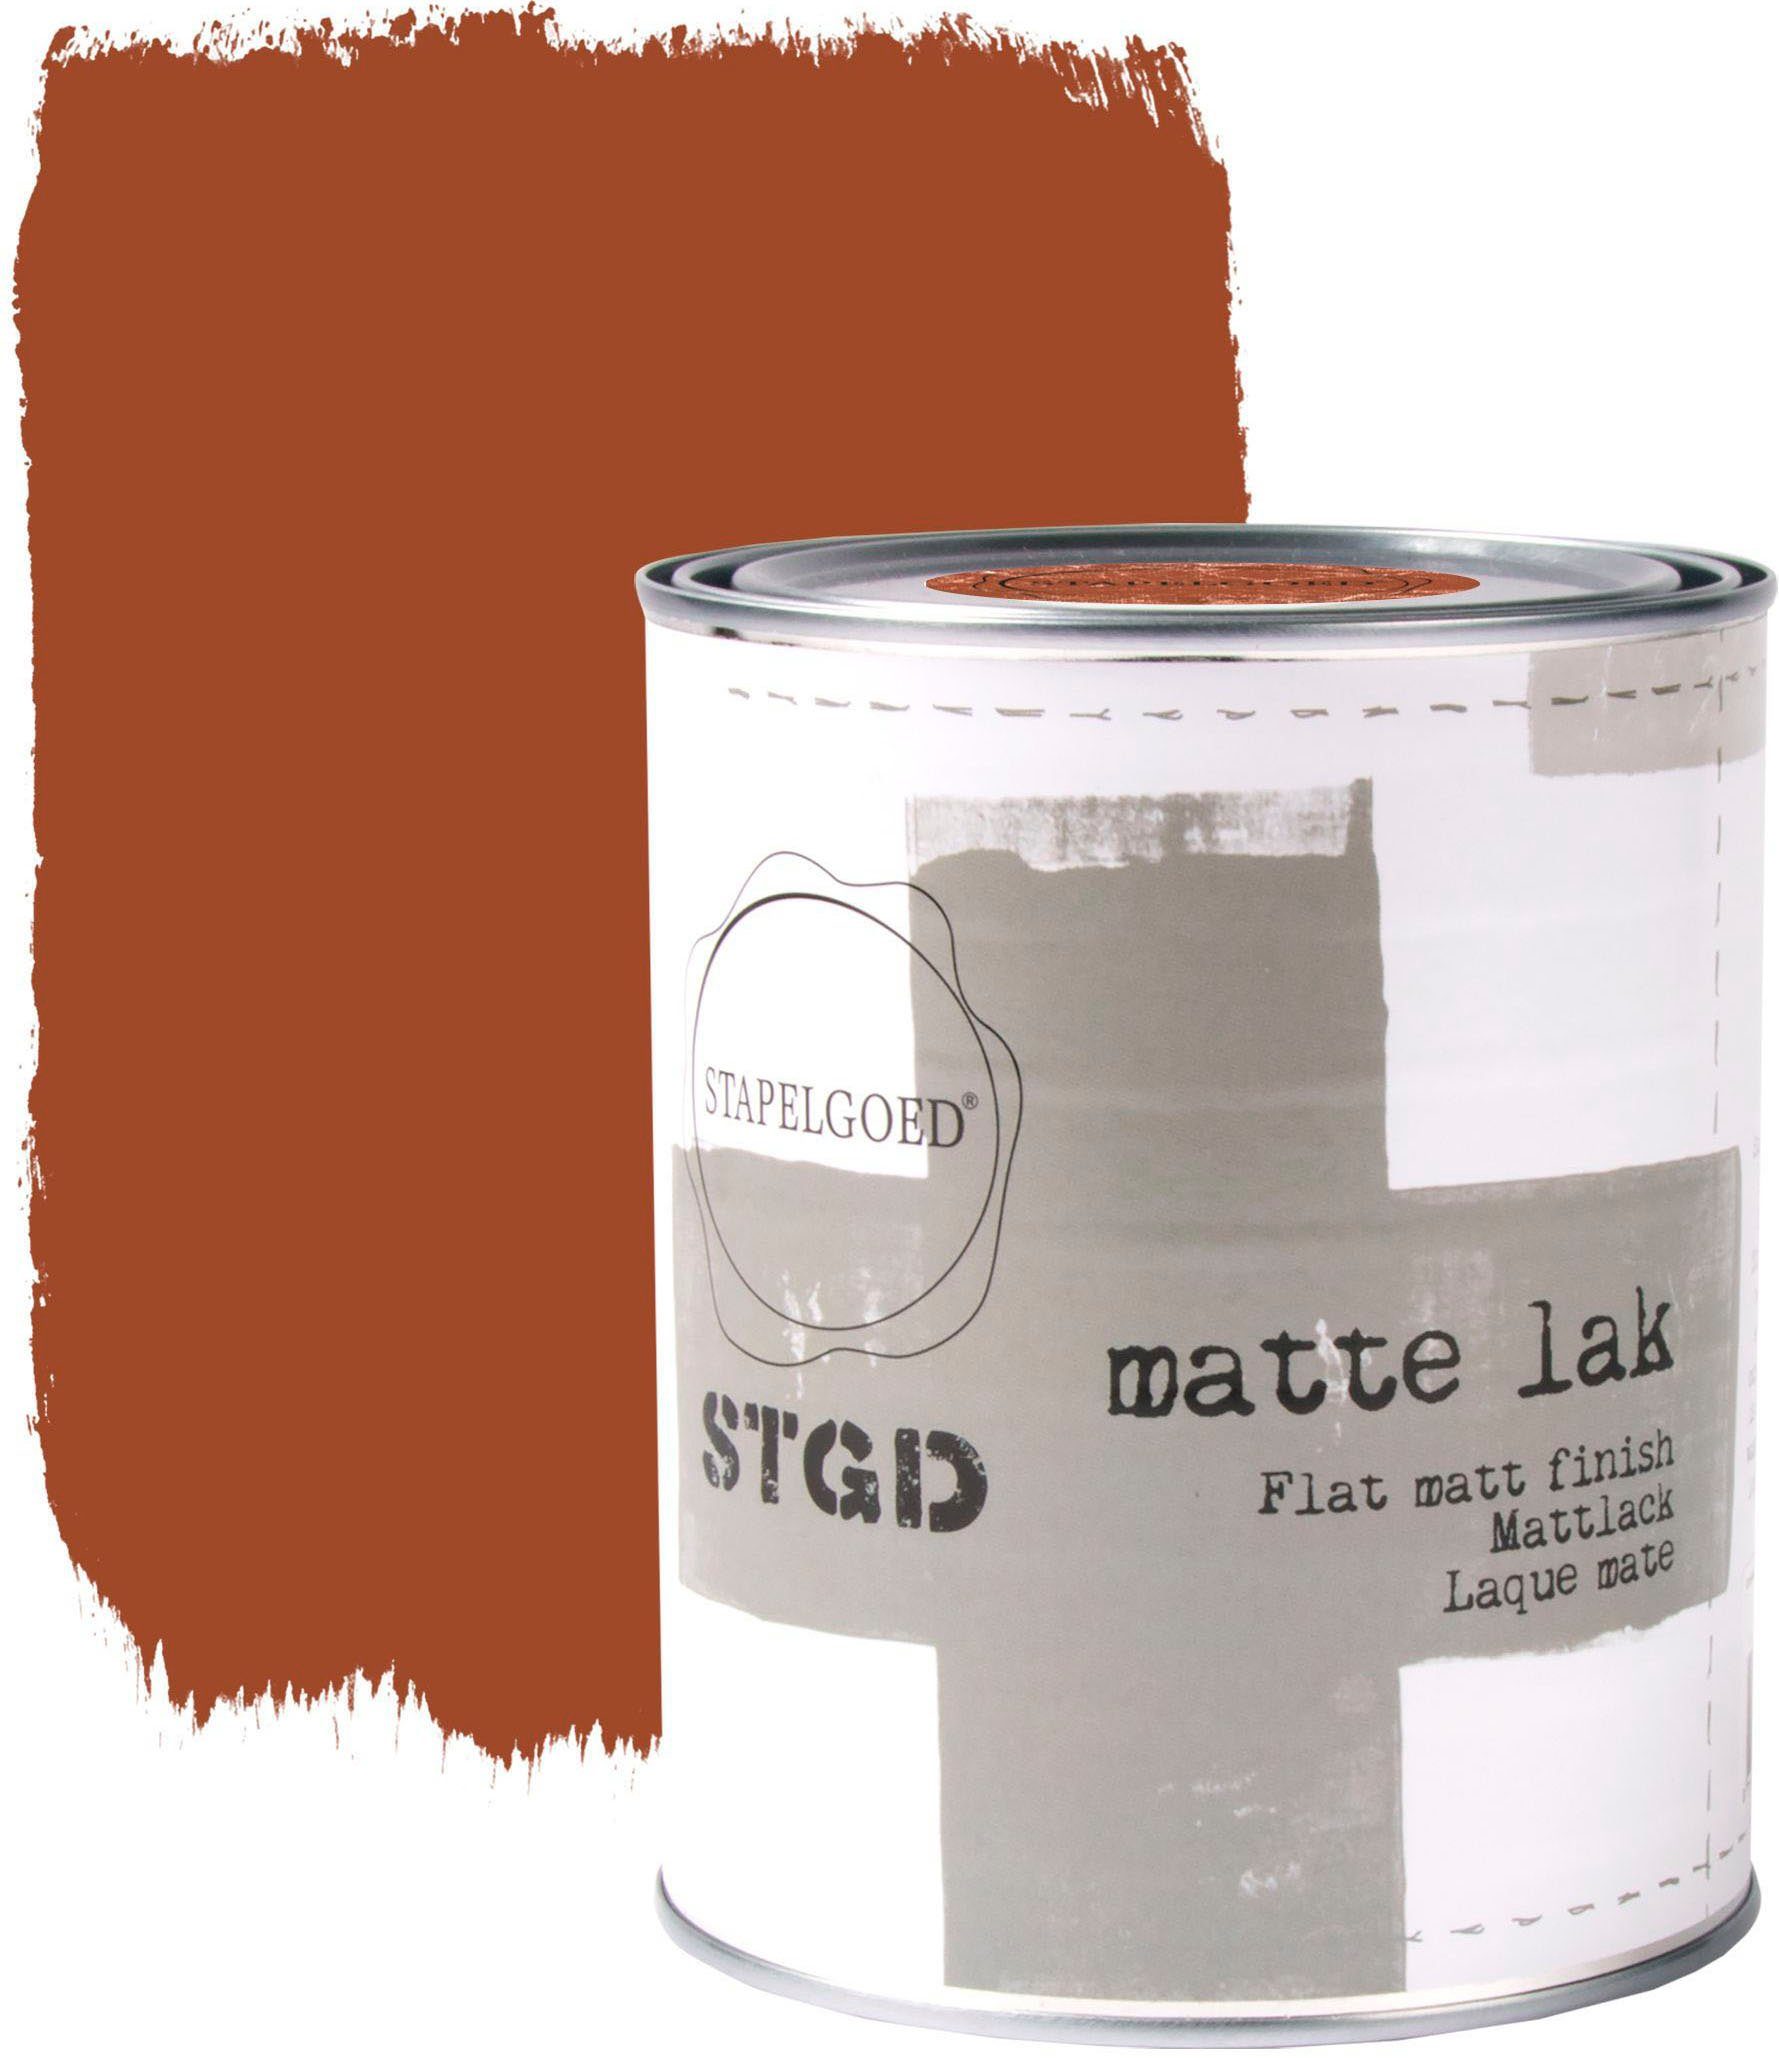 STAPELGOED Lack STGD matte lak brown shades, auf Wasserbasis, waschbeständig und gebrauchsfertig, 1 Liter Coconut Braun